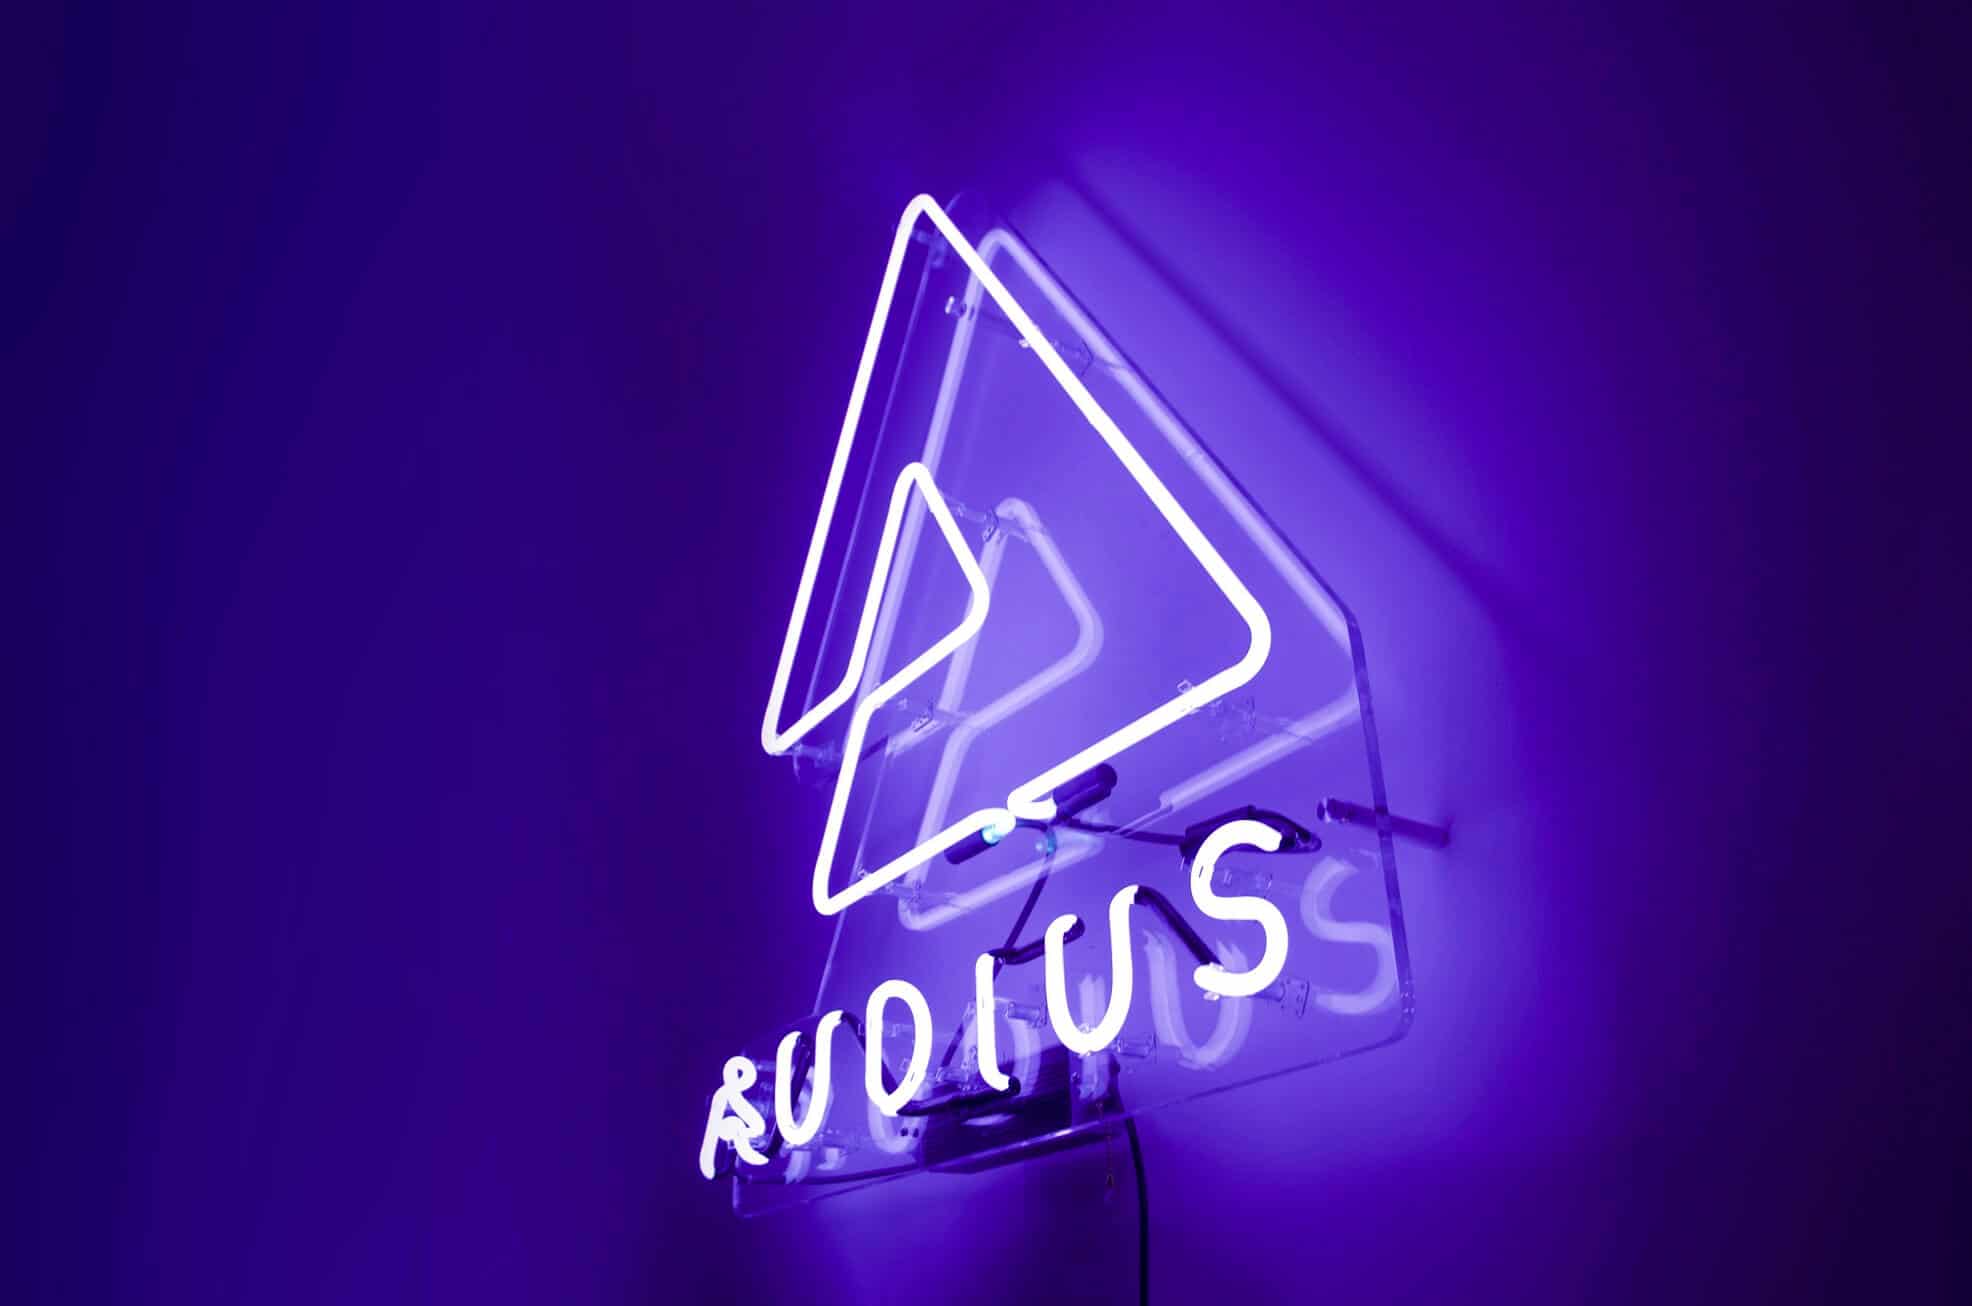 Audius announces acquisition of virtual platform Soundstage.fm